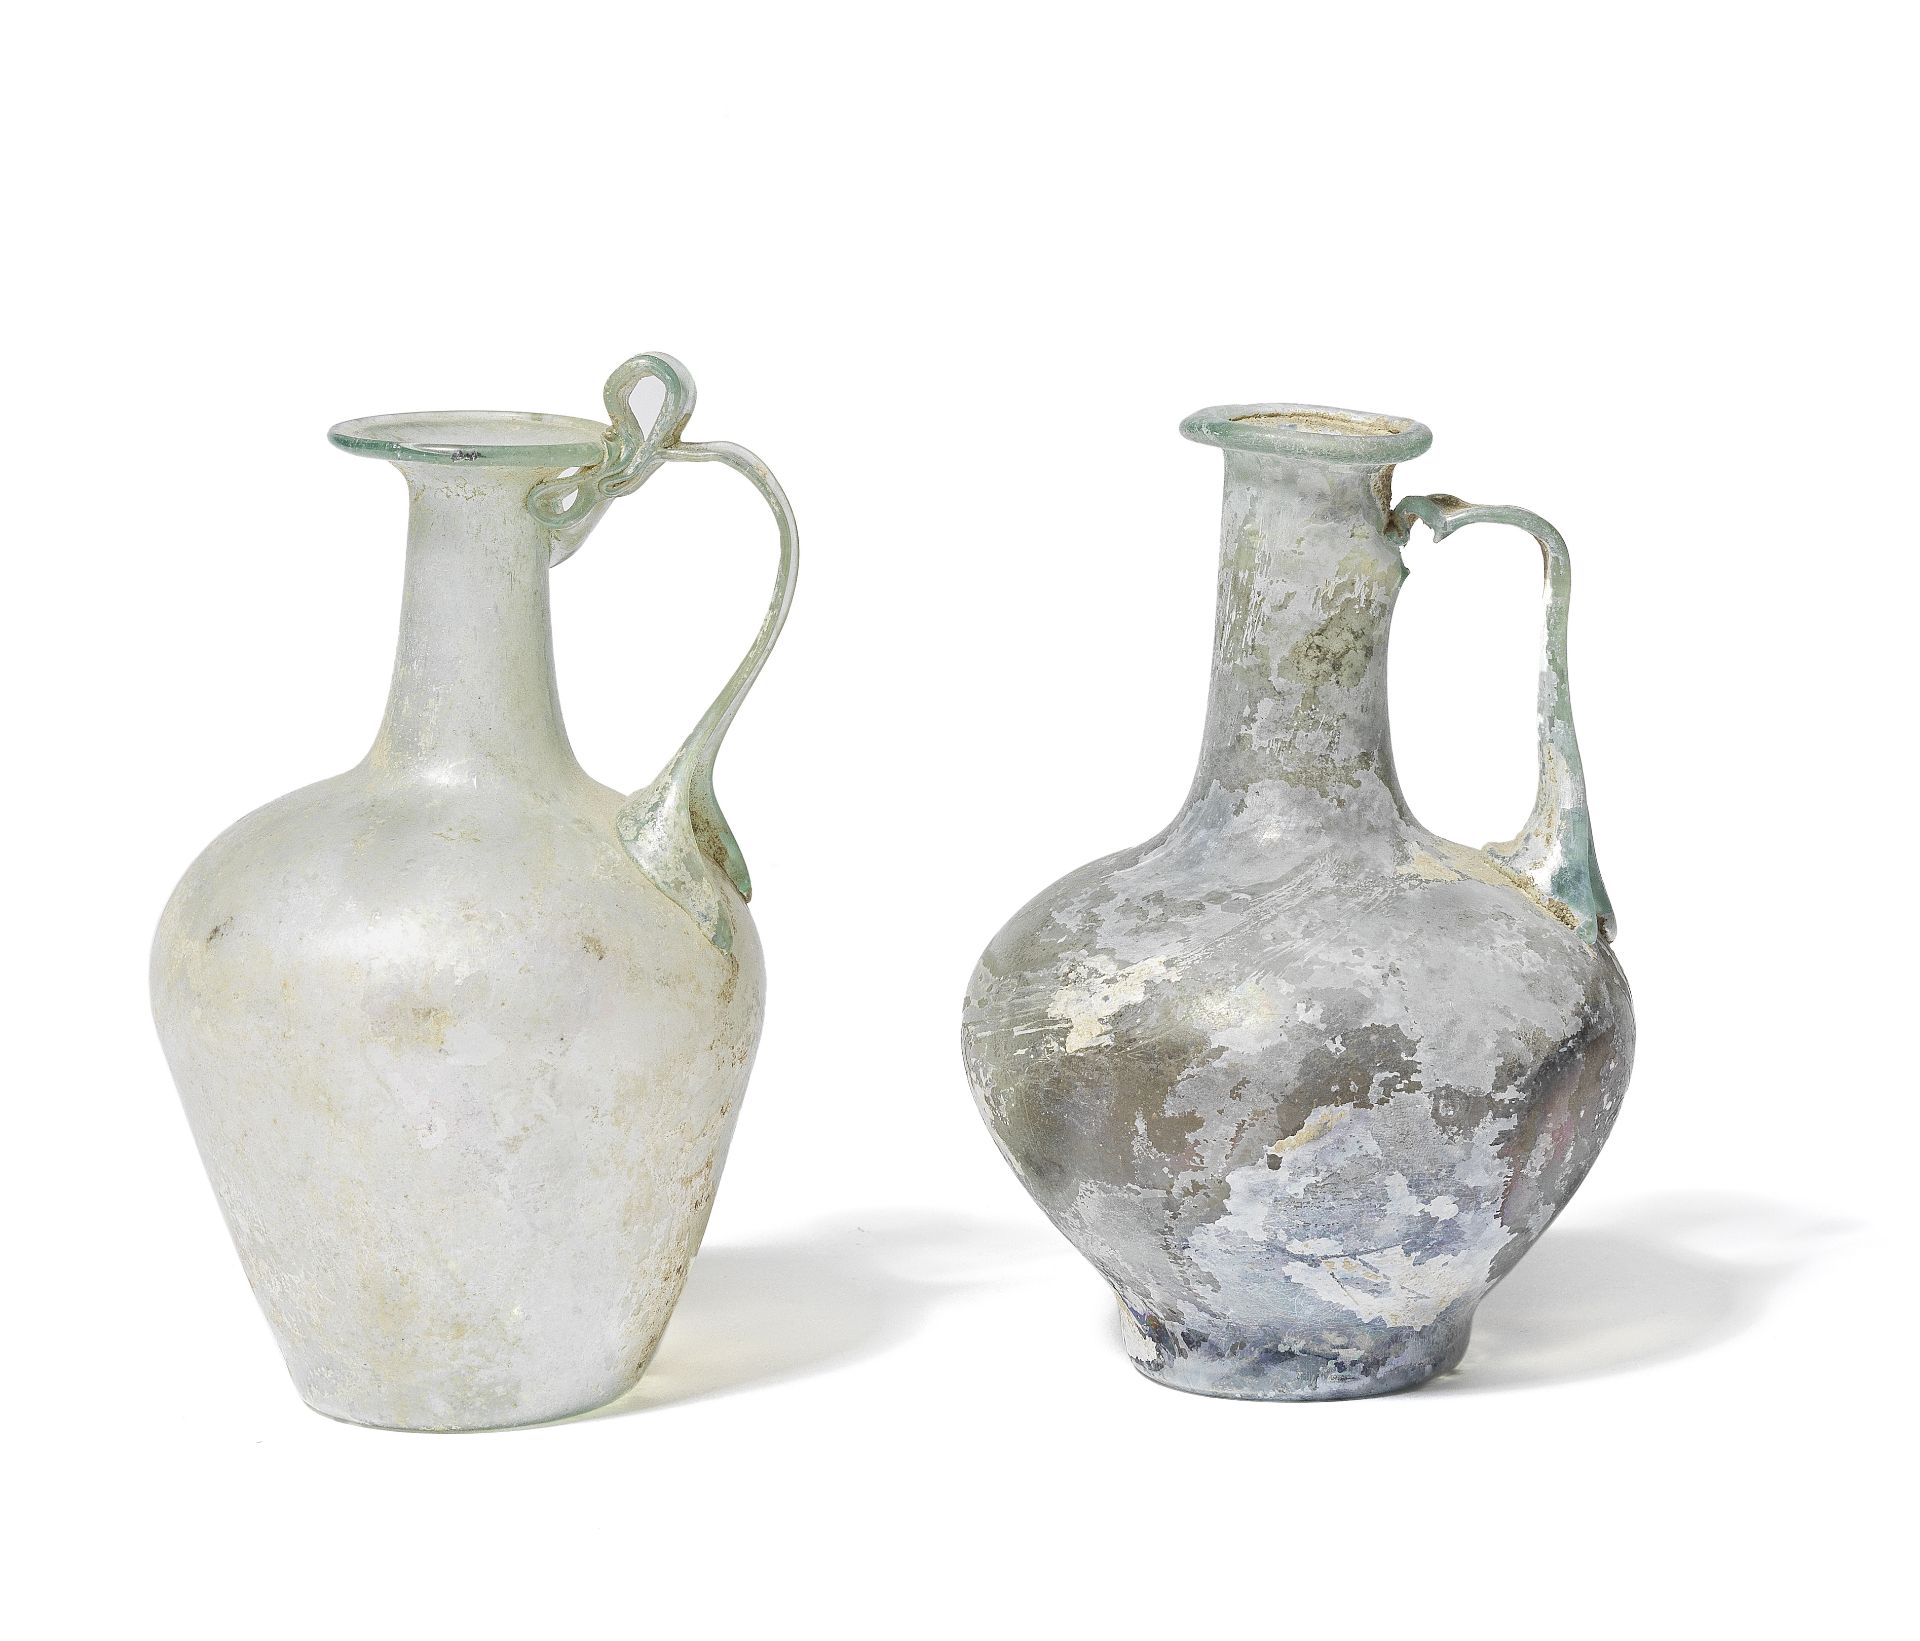 Two Roman pale green glass jugs 2